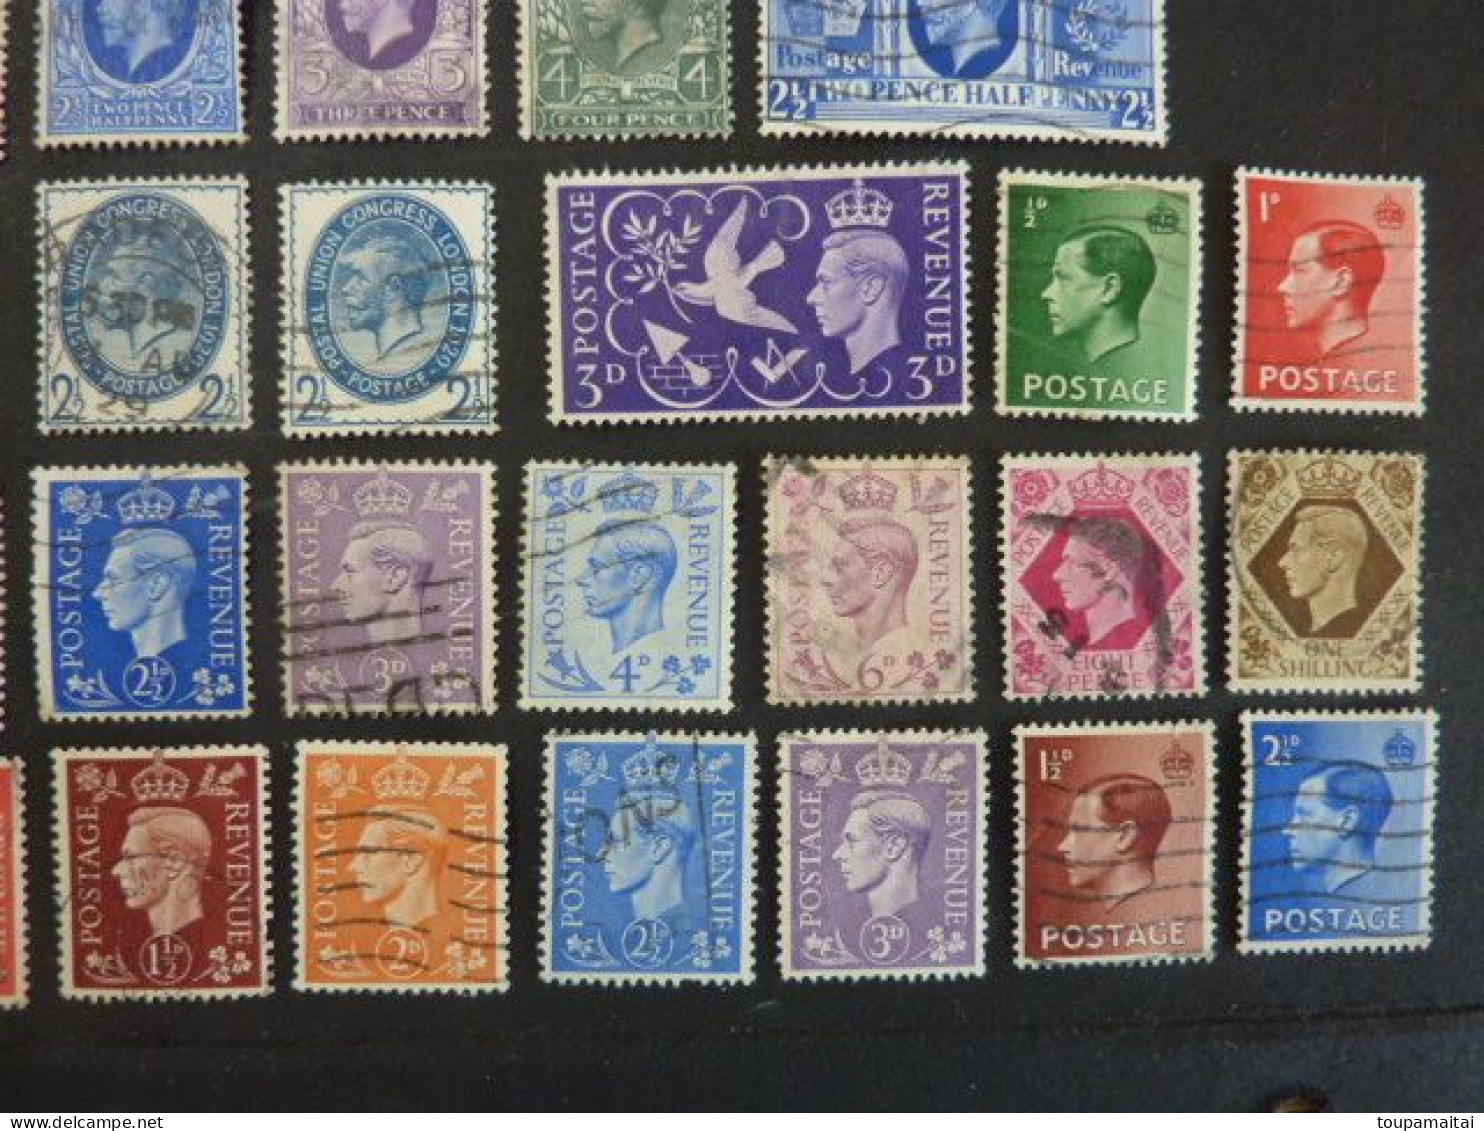 GRANDE BRETAGNE, divers timbres des années 1902 à 1951, LOT de 70 TIMBRES OBLITERES, Edward VII à Georges VI